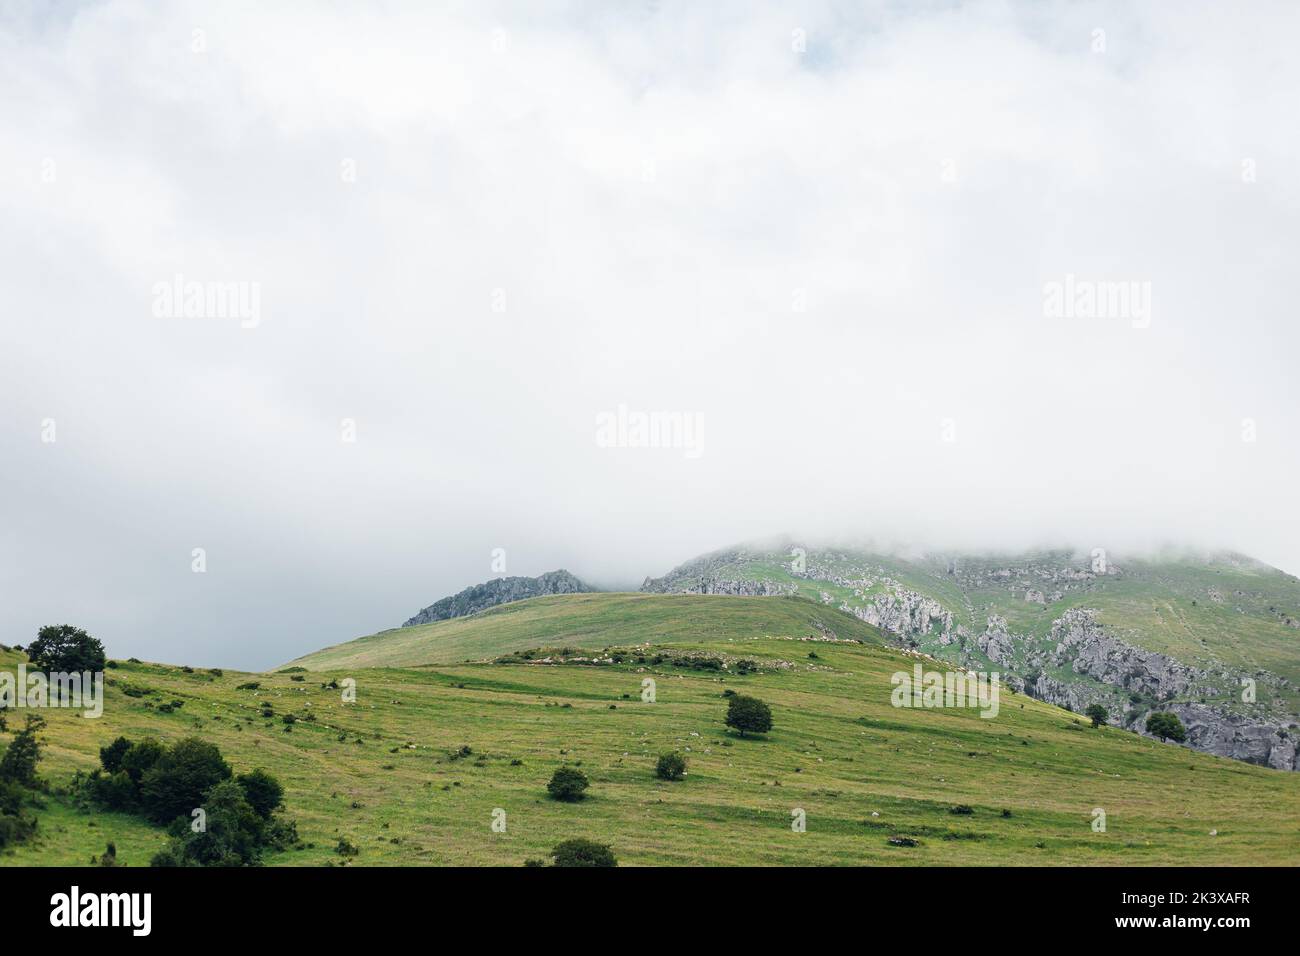 Las hermosas montañas de Armenia en un día nublado Foto de stock